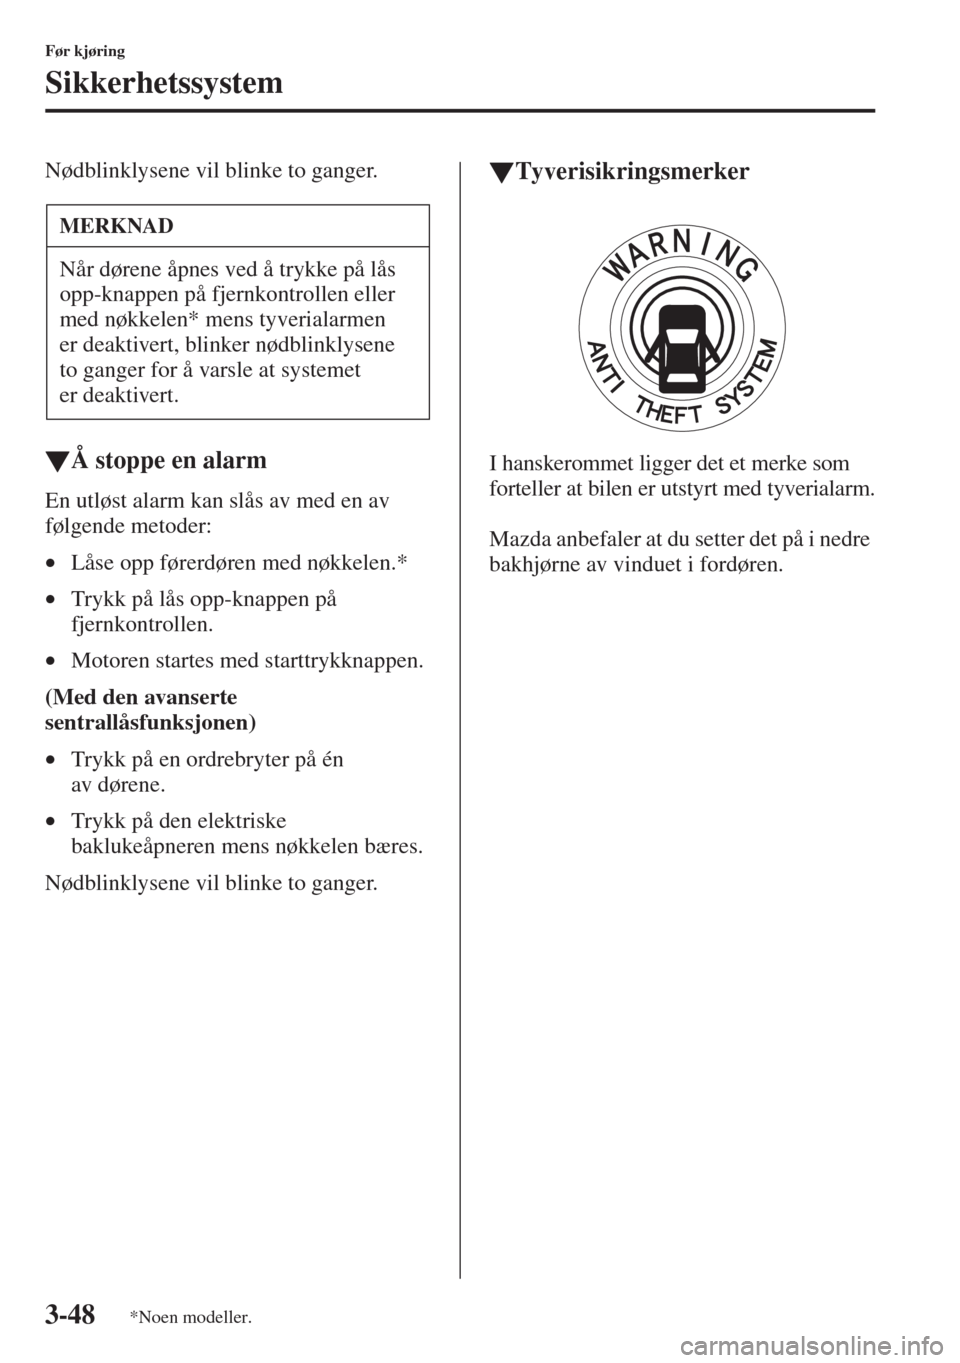 MAZDA MODEL CX-5 2013  Brukerhåndbok (in Norwegian) 3-48
Før kjøring
Sikkerhetssystem
Nødblinklysene vil blinke to ganger.
tÅ stoppe en alarm
En utløst alarm kan slås av med en av 
følgende metoder:
•Låse opp førerdøren med nøkkelen.*
•T